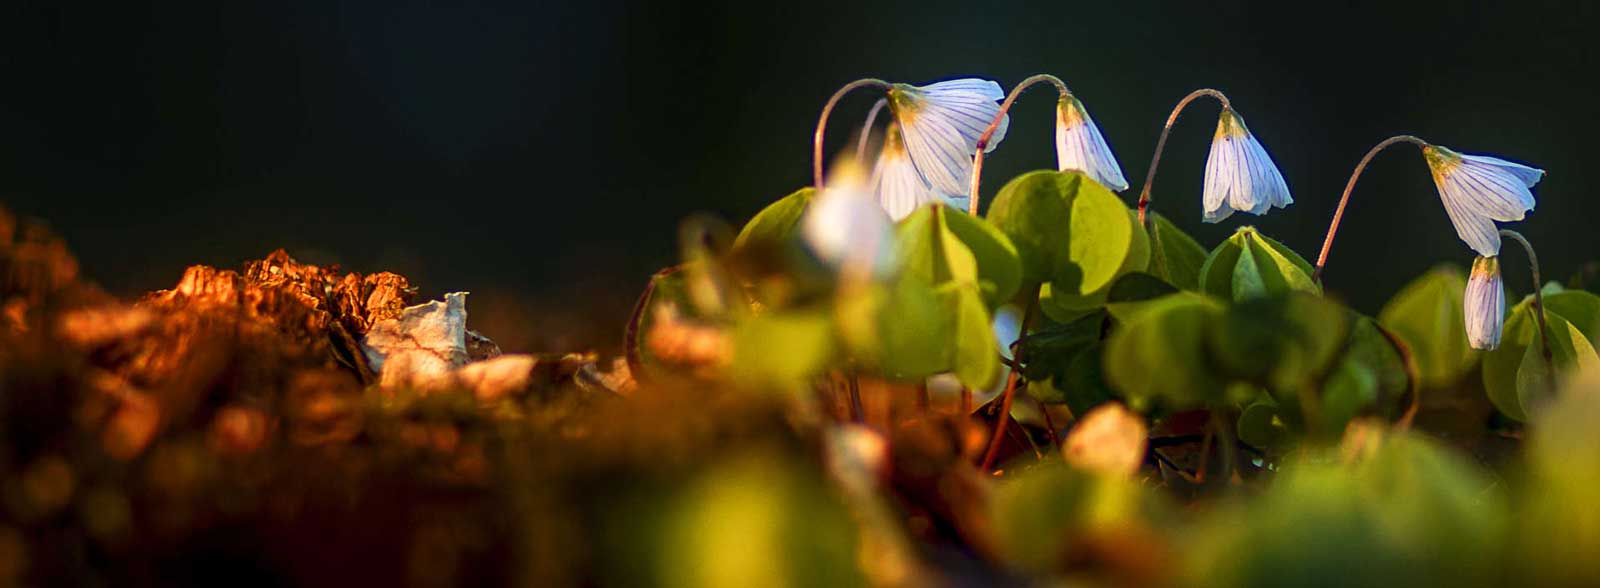 Frühblüher auf dem Waldboden bei spärlichem Sonnenlicht